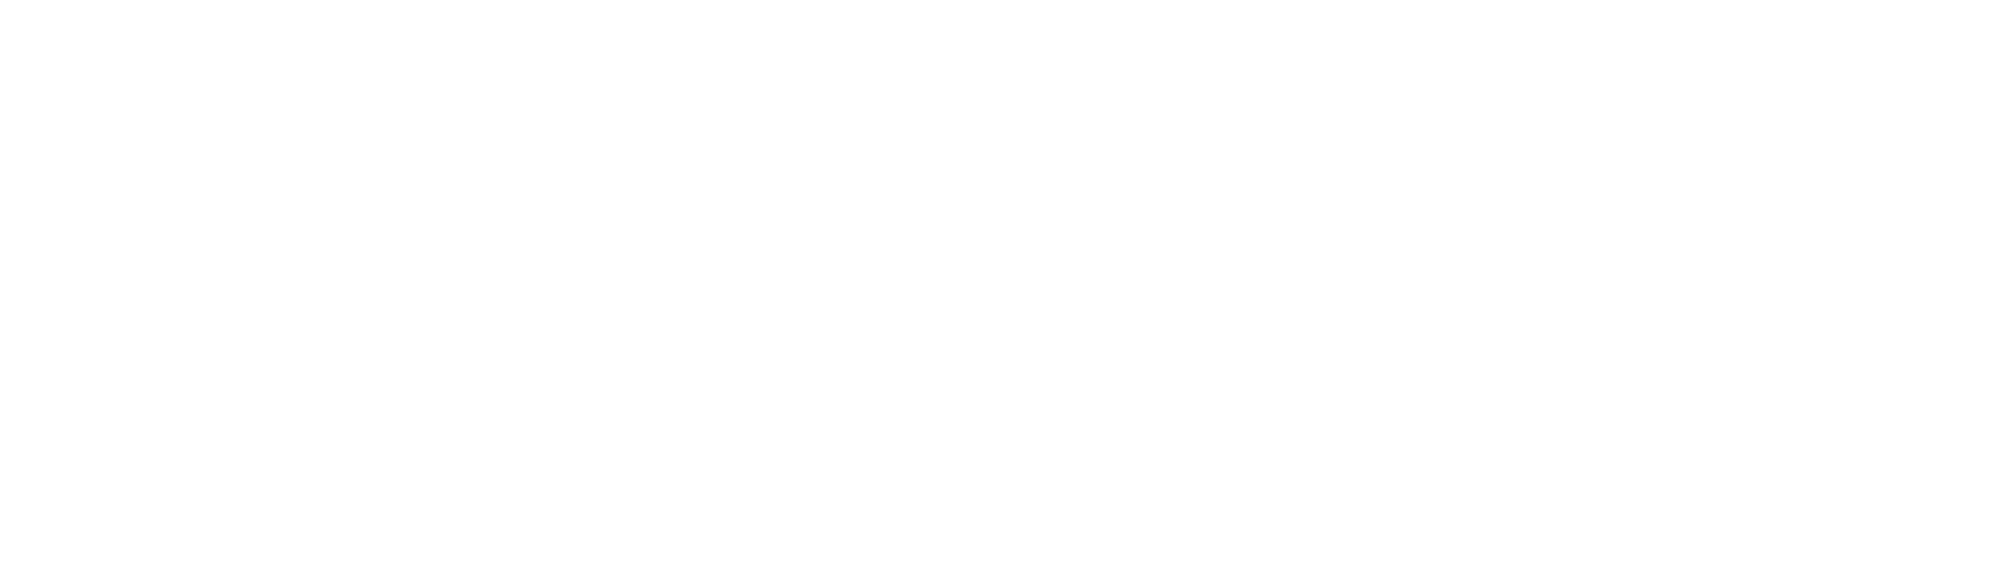 Cocorico-Electro-logo-festival-electro